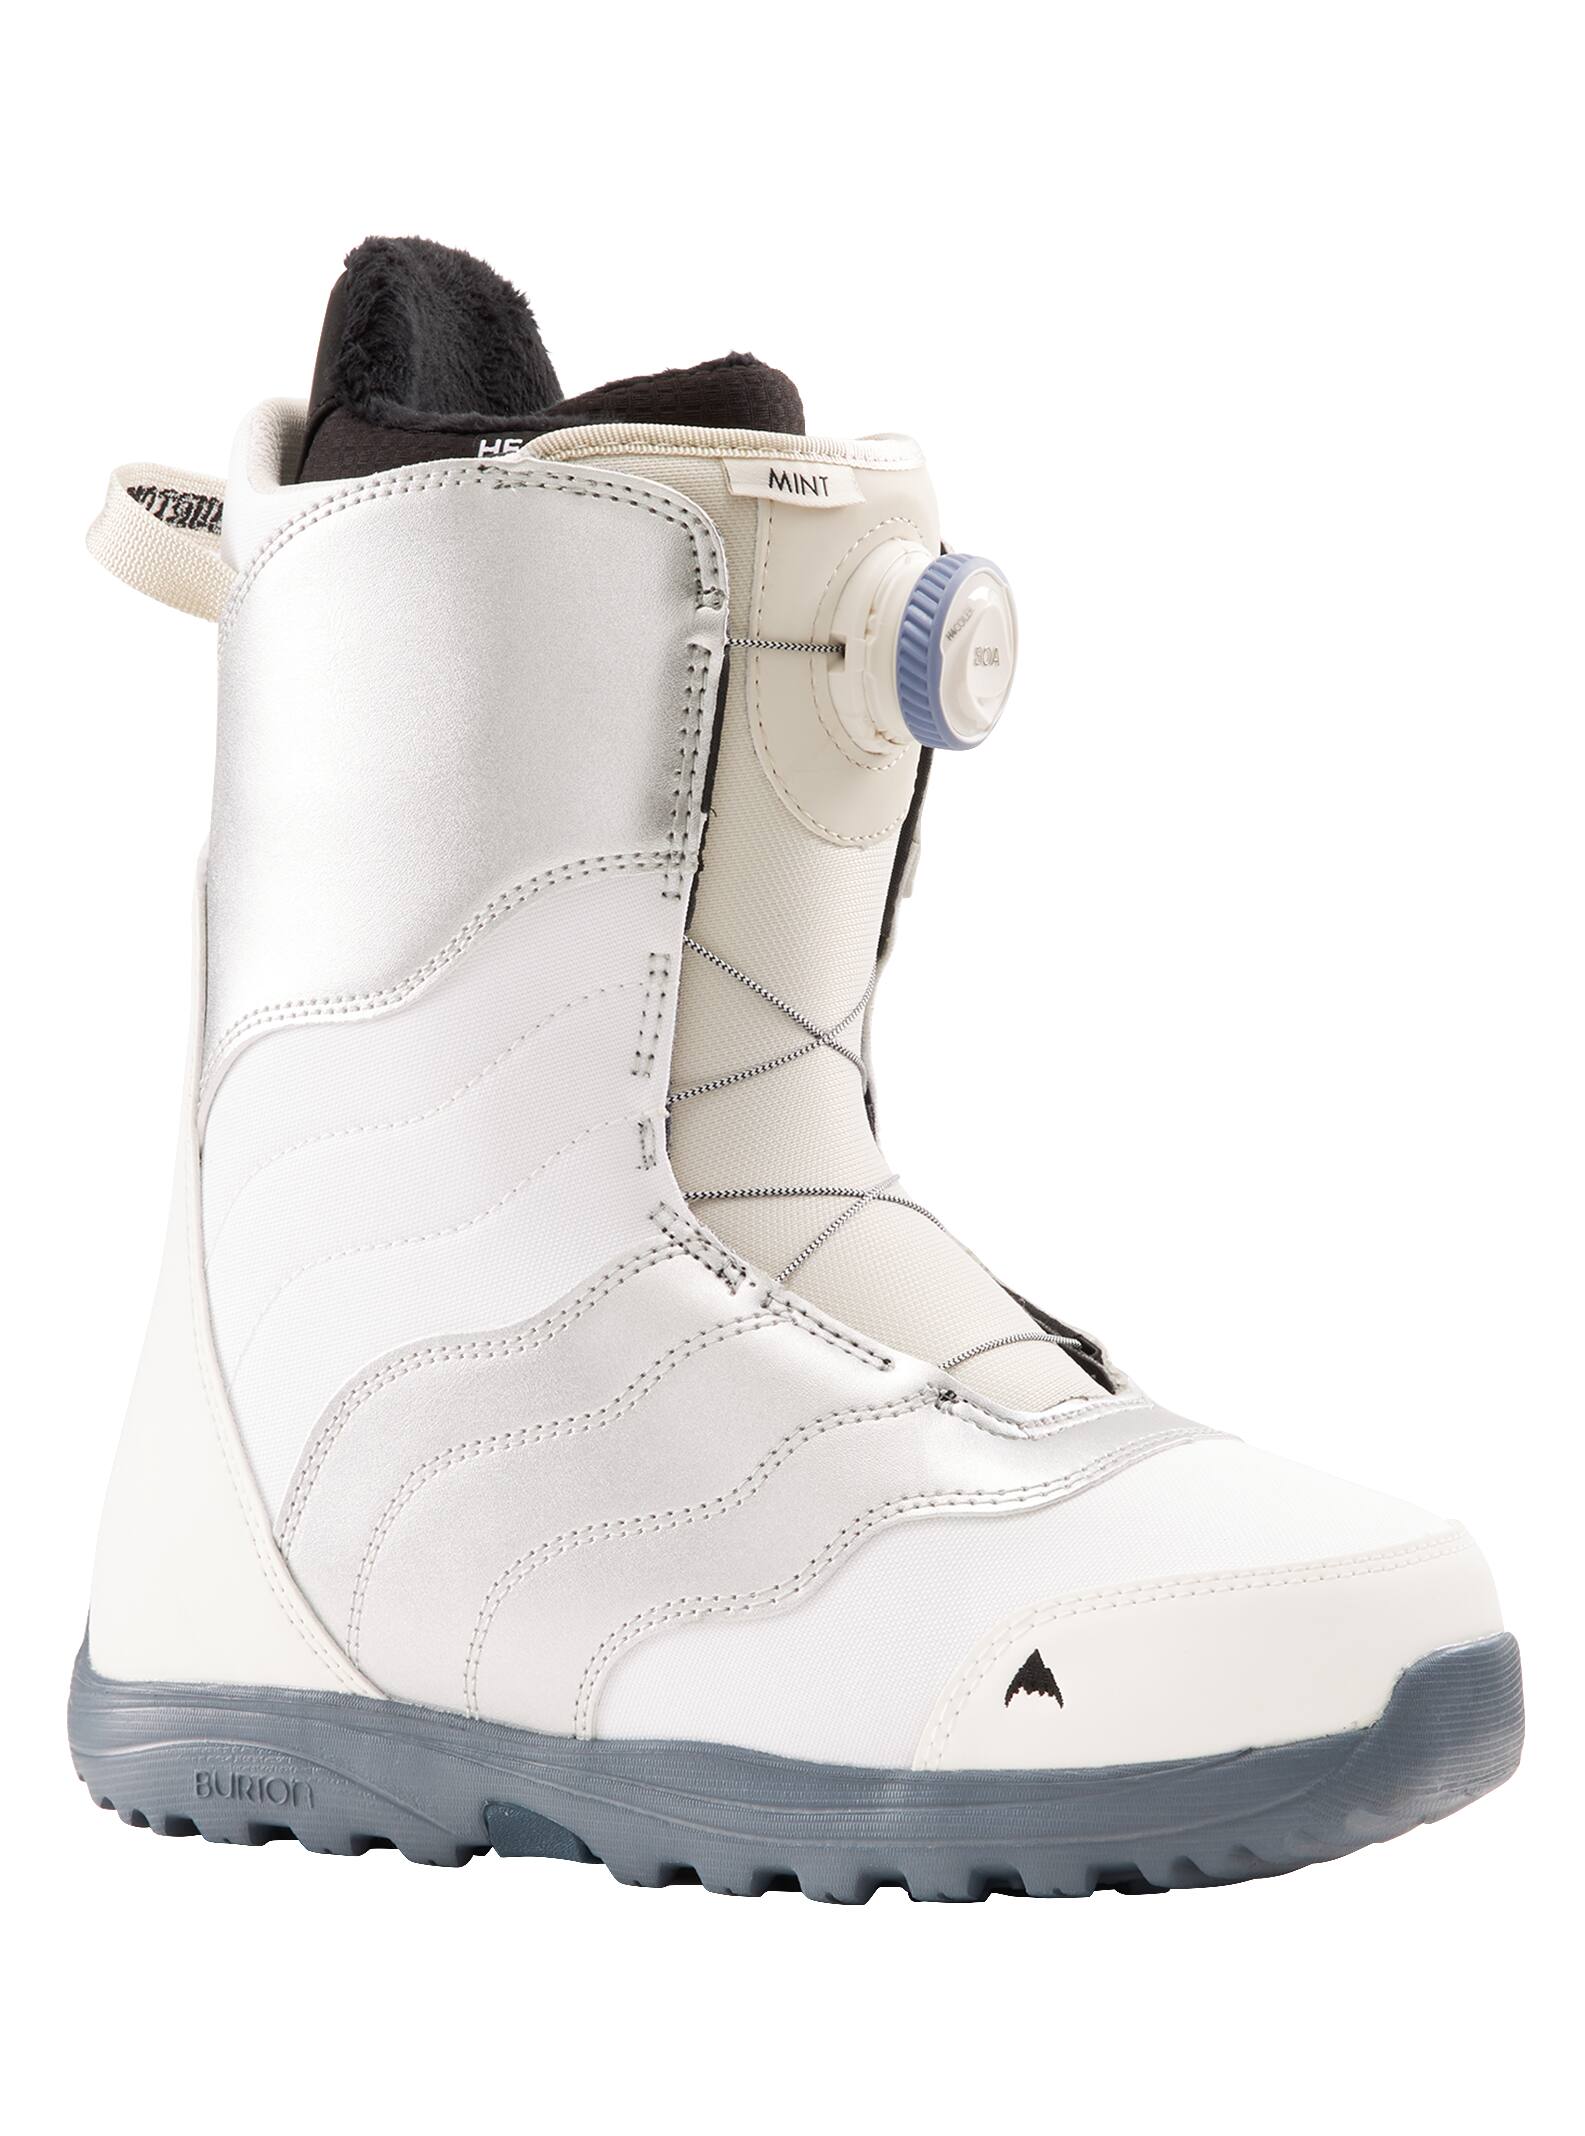 Boa SnowBoard Boots Size 11 easy White/Gray New ladies boa snow board boots 